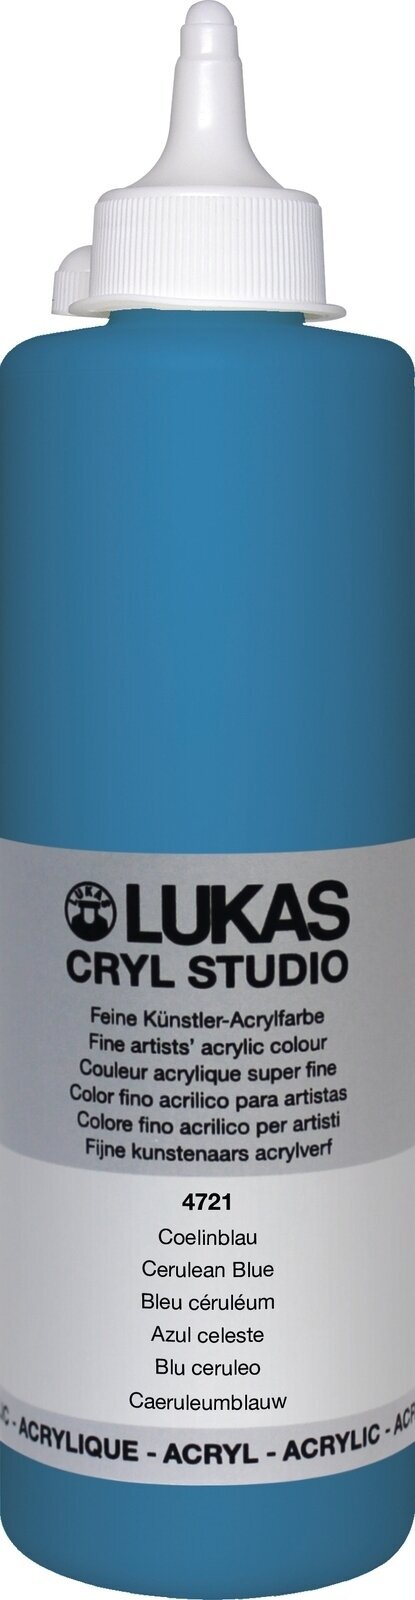 Acrylfarbe Lukas Cryl Studio Acrylfarbe 500 ml Cerulean Blue